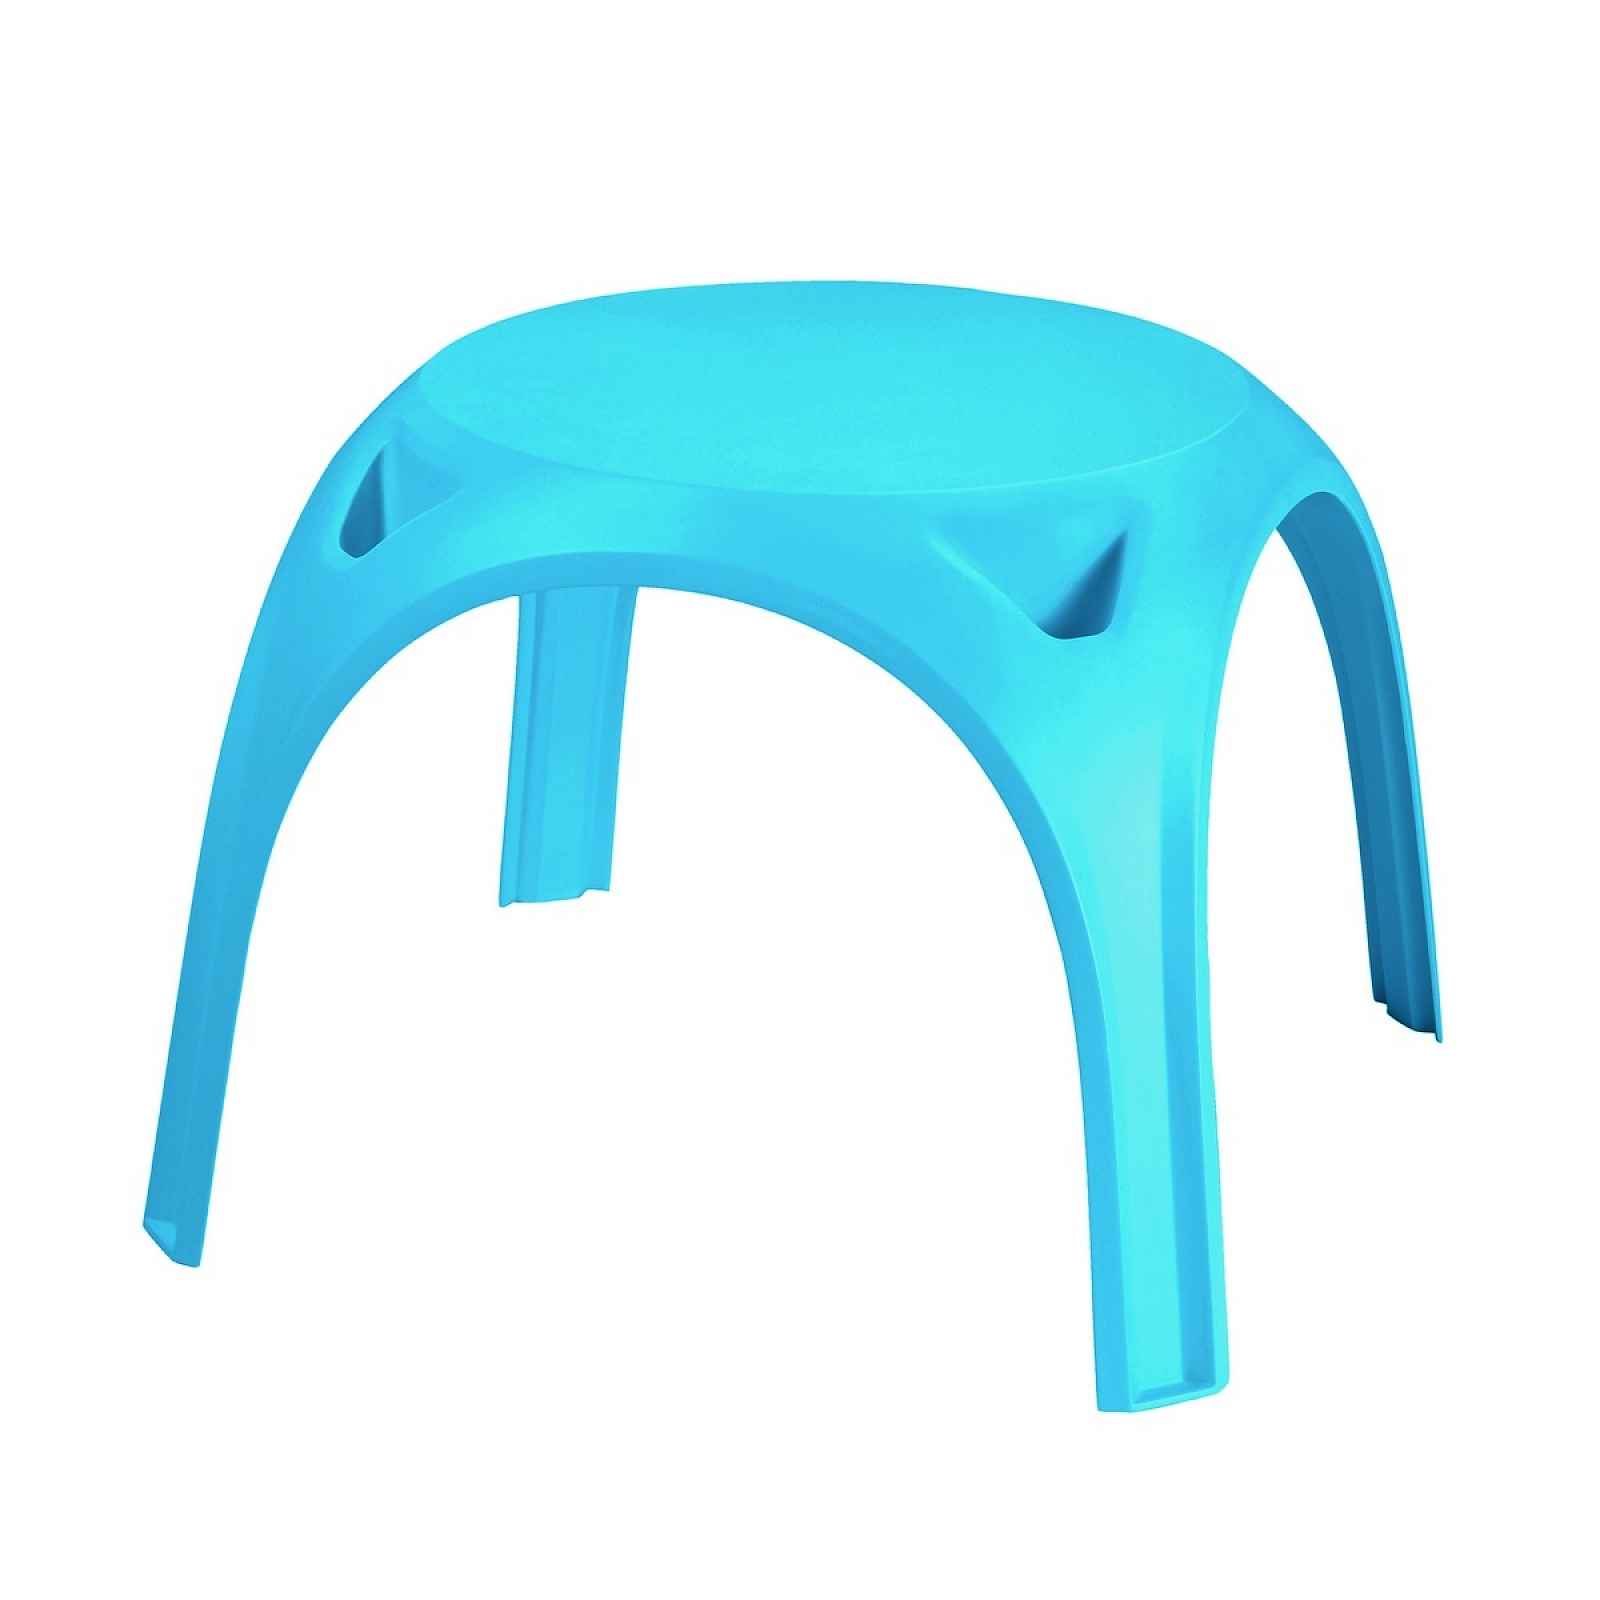 Dětský plastový stolek KIDS TABLE, modrý